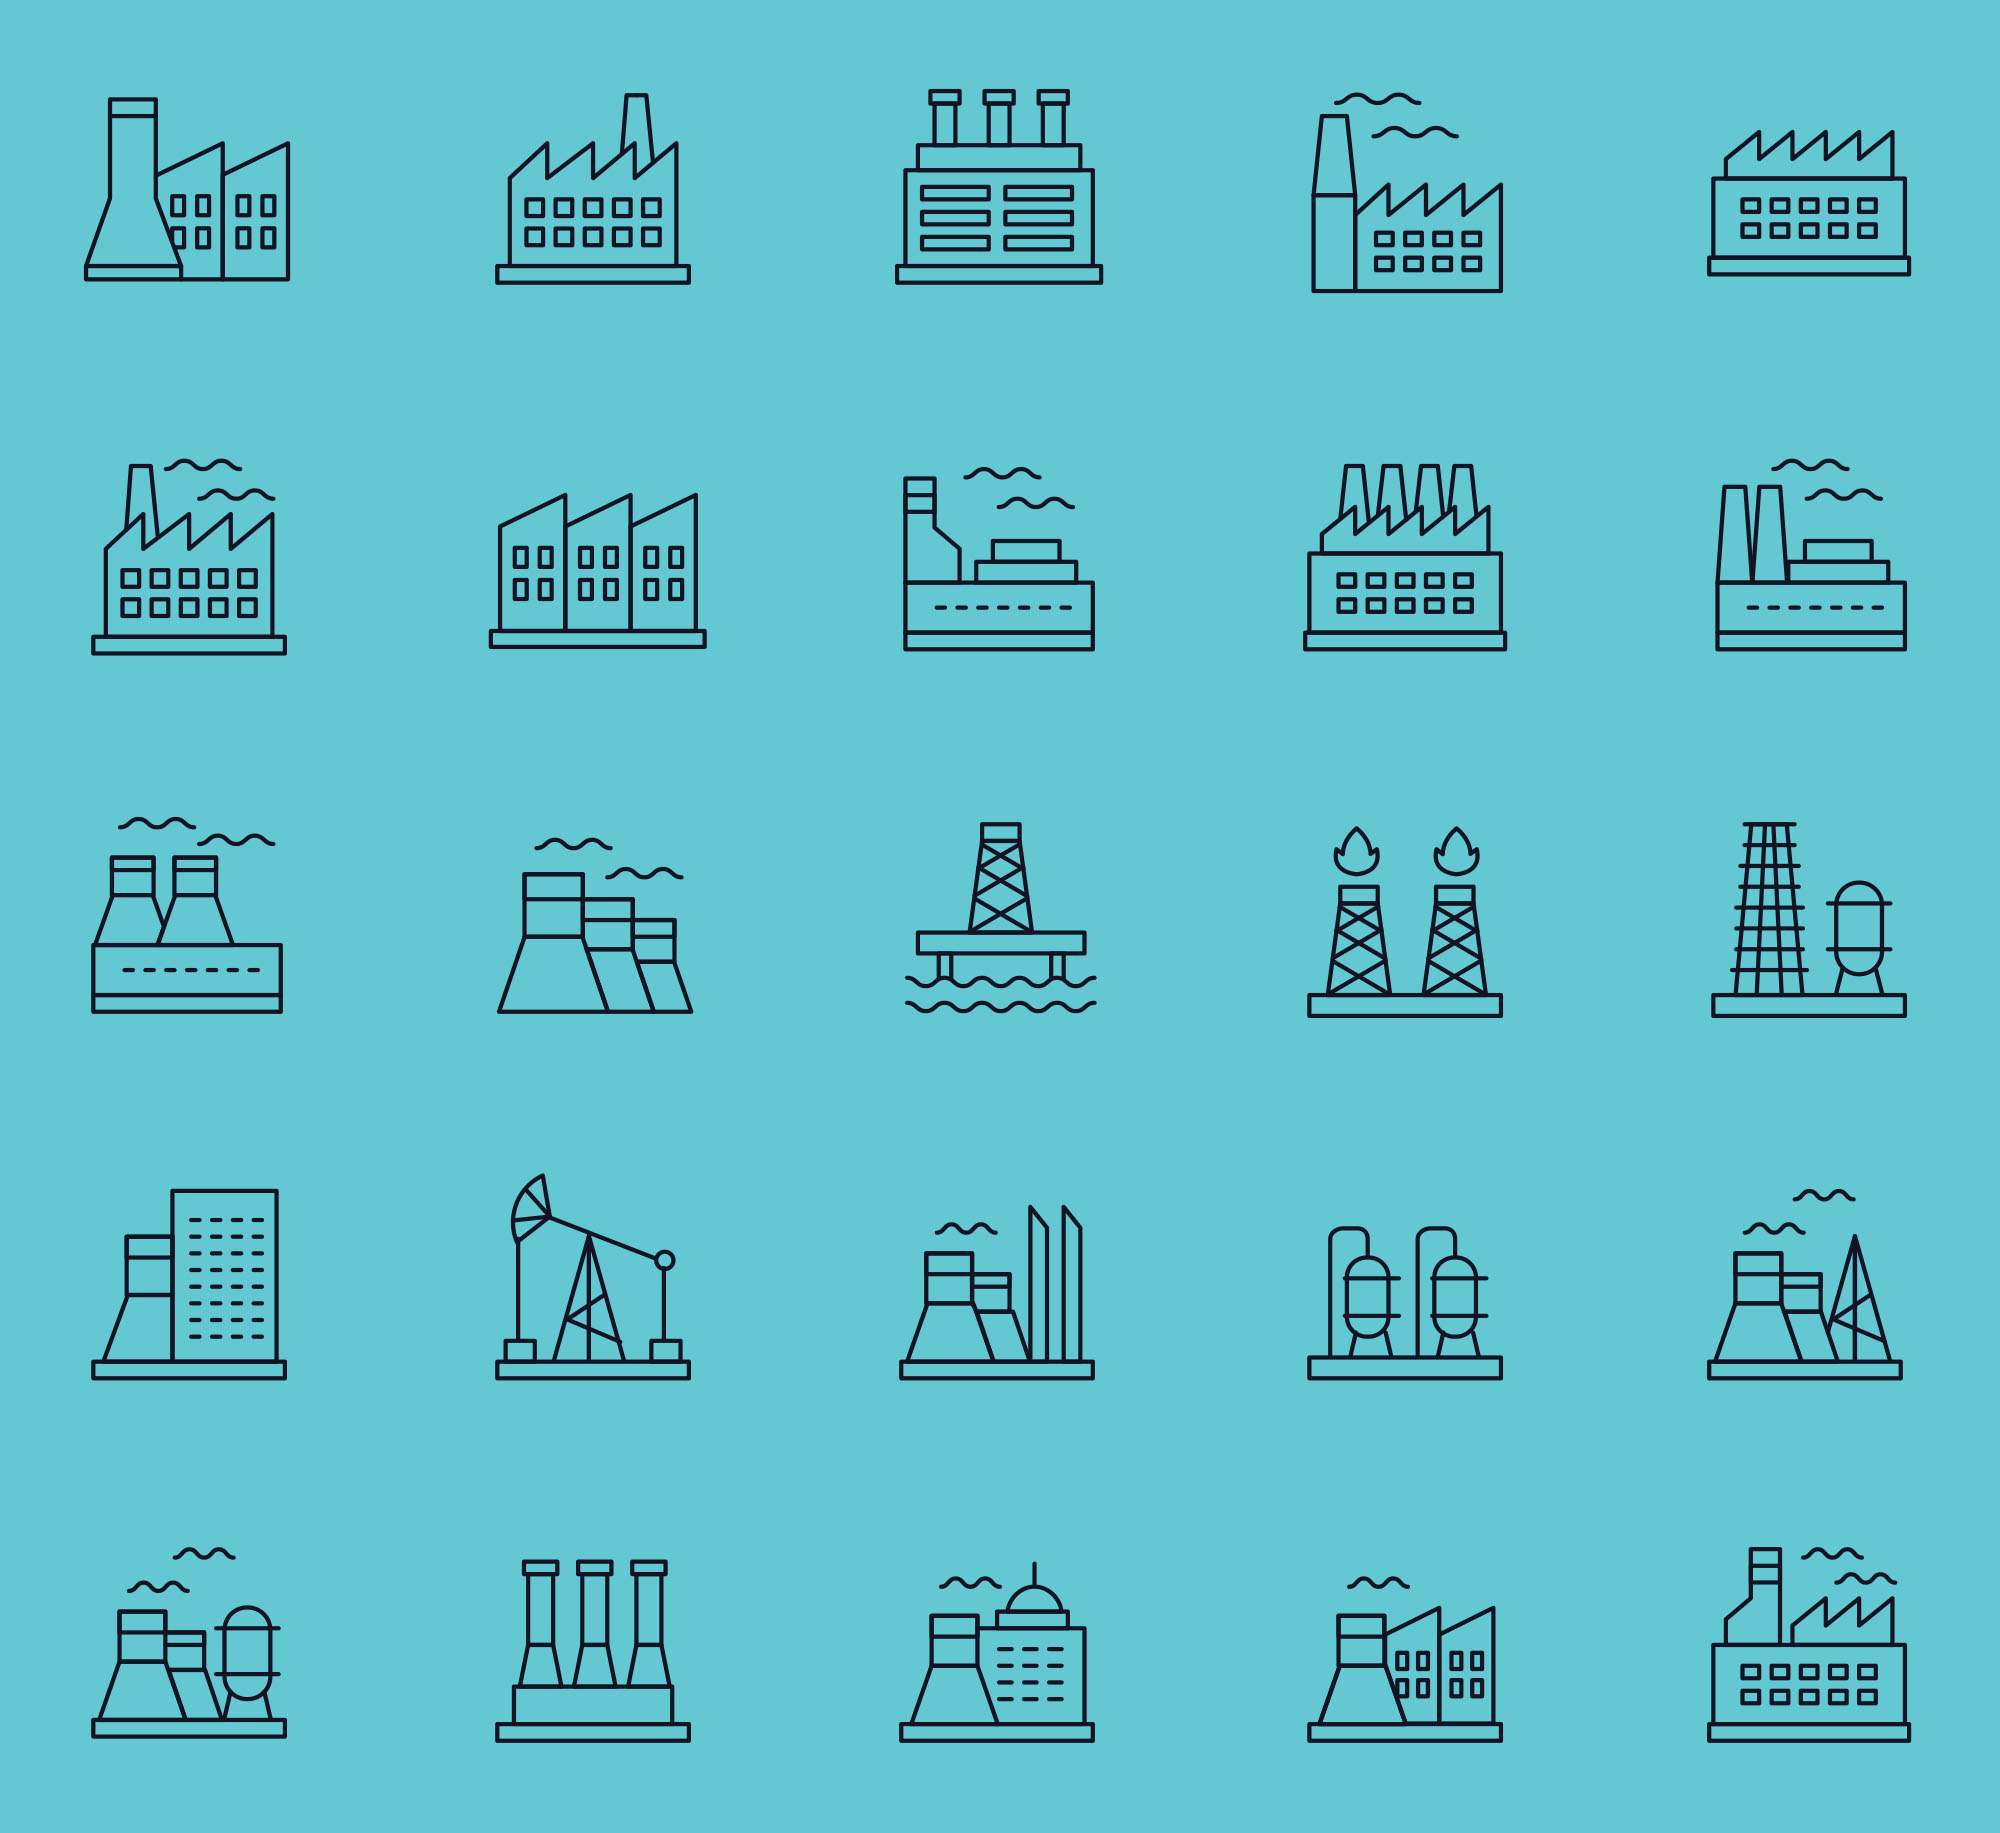 25枚建筑线性图标设计素材 25 Free Industry Icons插图(1)